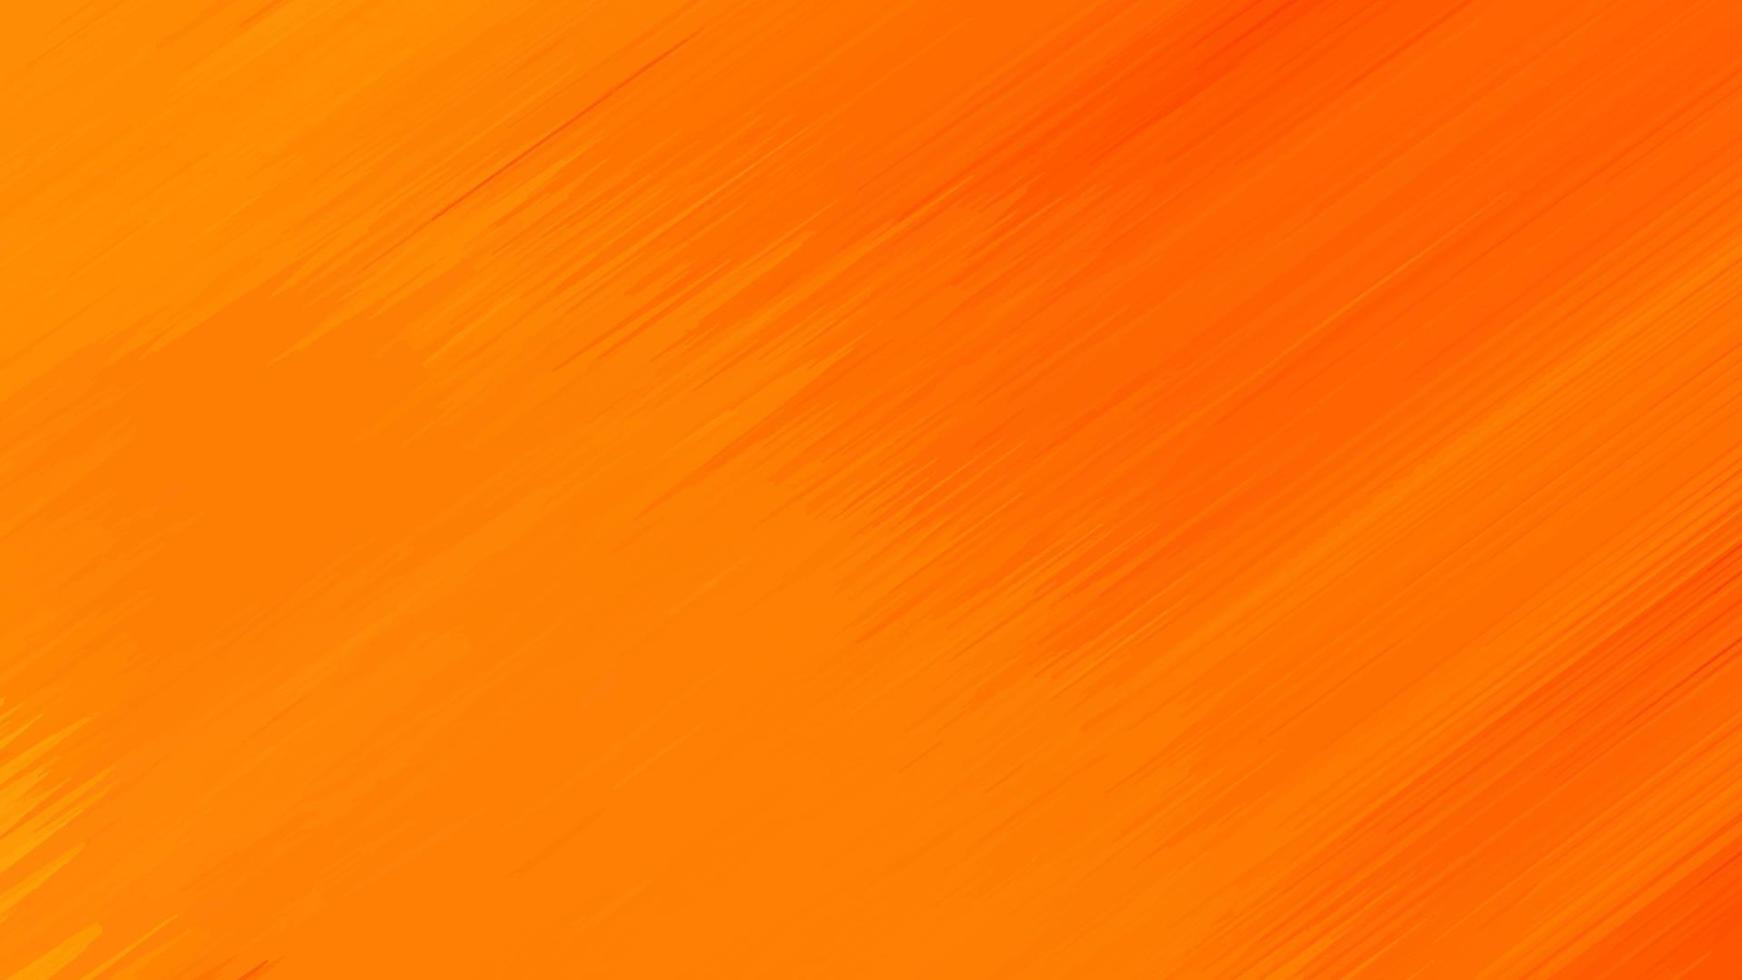 Thiết kế trừu tượng màu cam - một sự kết hợp tuyệt vời giữa hình học và màu sắc. Được tạo ra để kích thích trí tưởng tượng của bạn, hình ảnh này sẽ đem đến một trải nghiệm tuyệt vời và đầy màu sắc. Hãy thưởng thức và cảm nhận sự sáng tạo của nhà thiết kế!